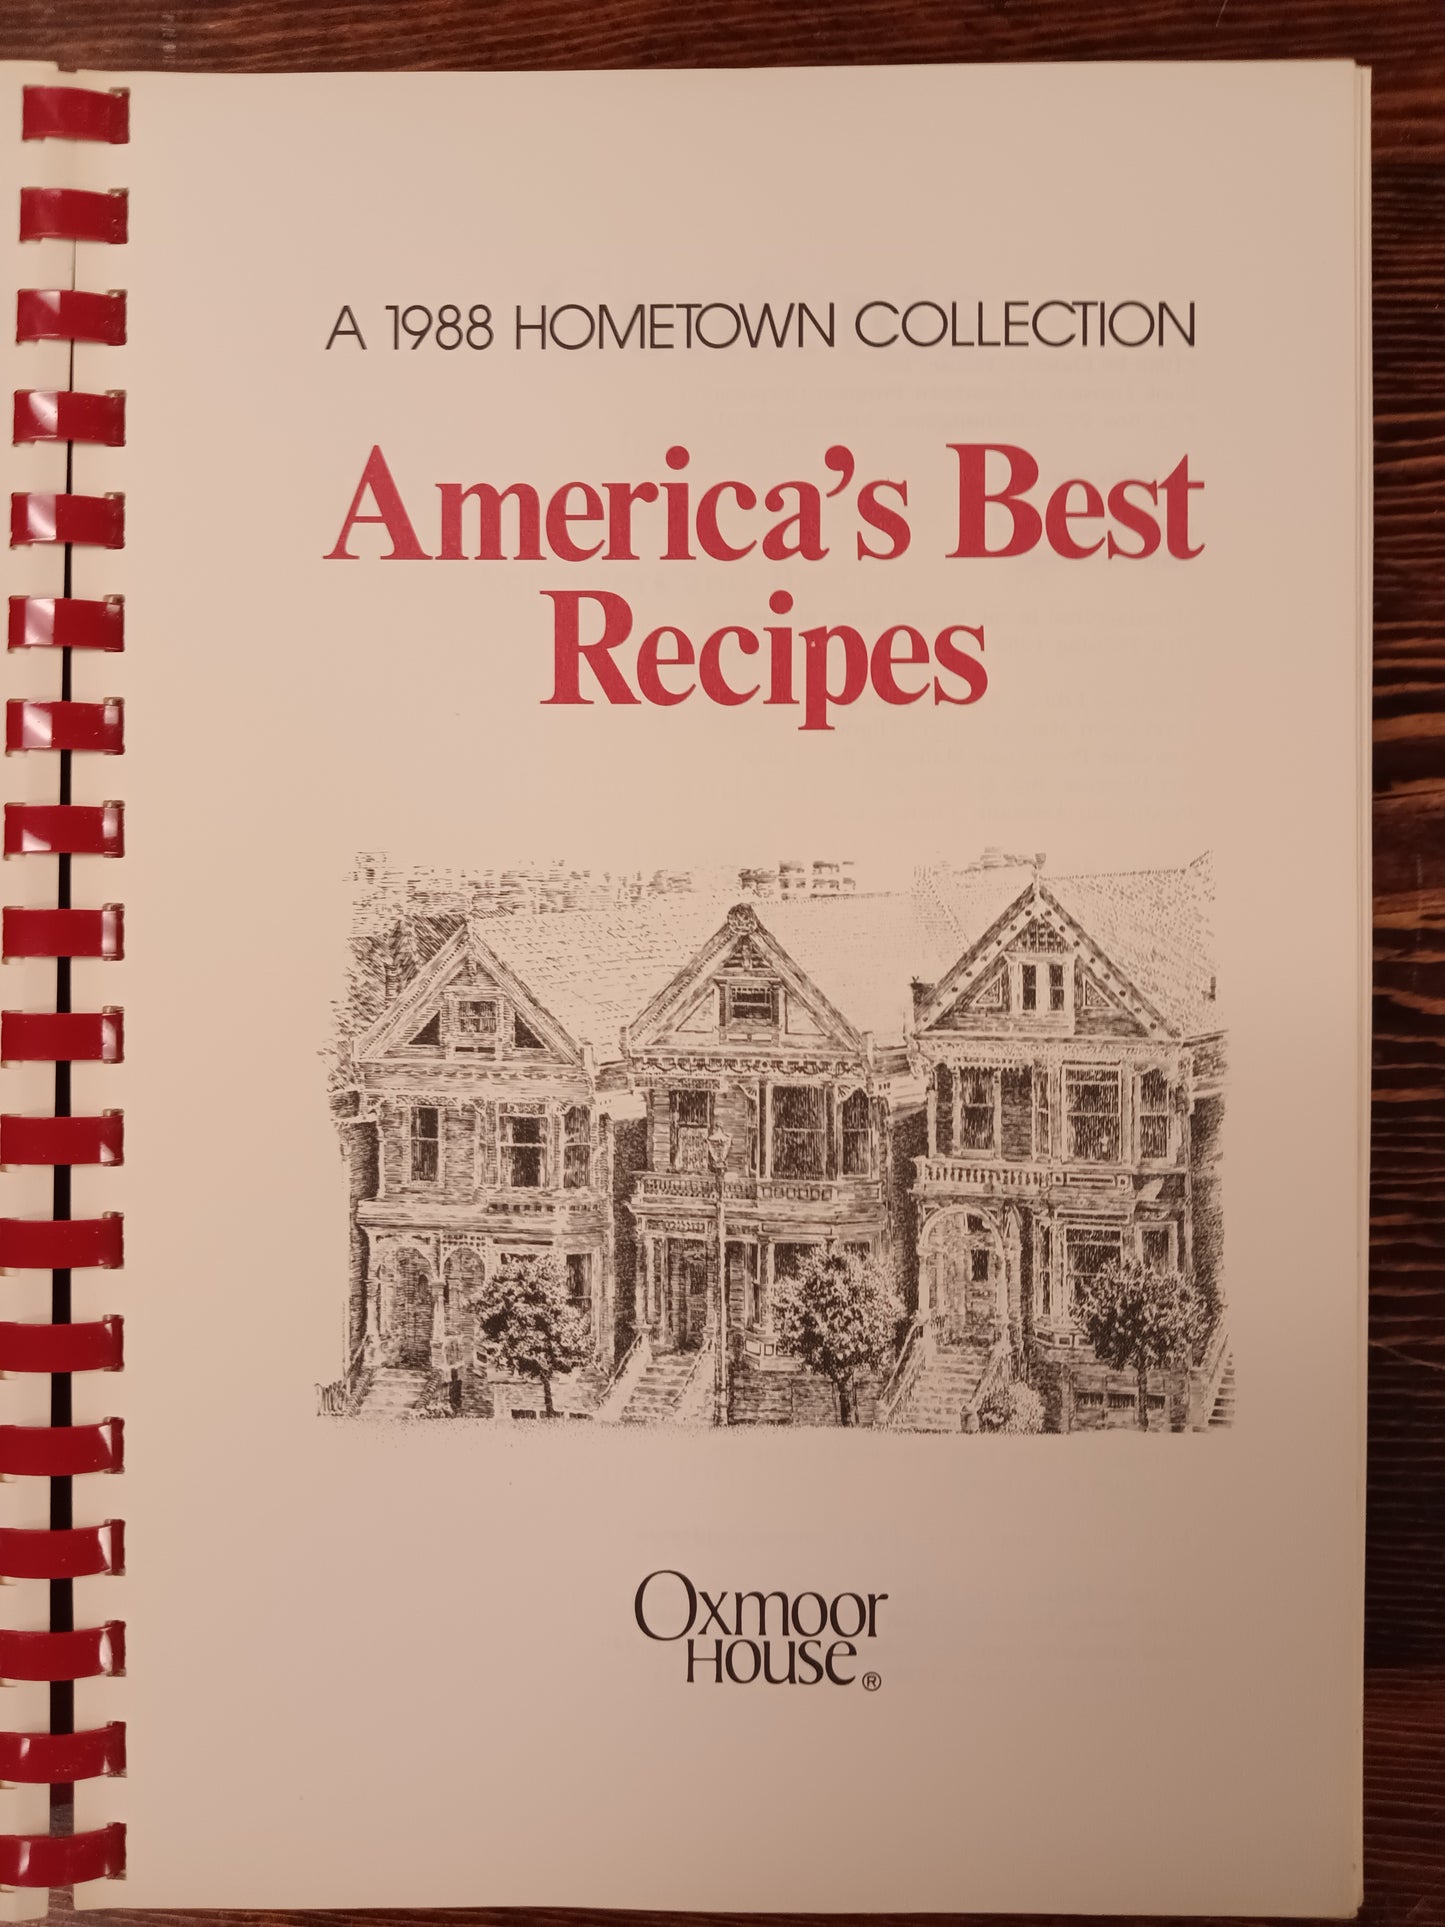 *America's Best Recipes Cookbook